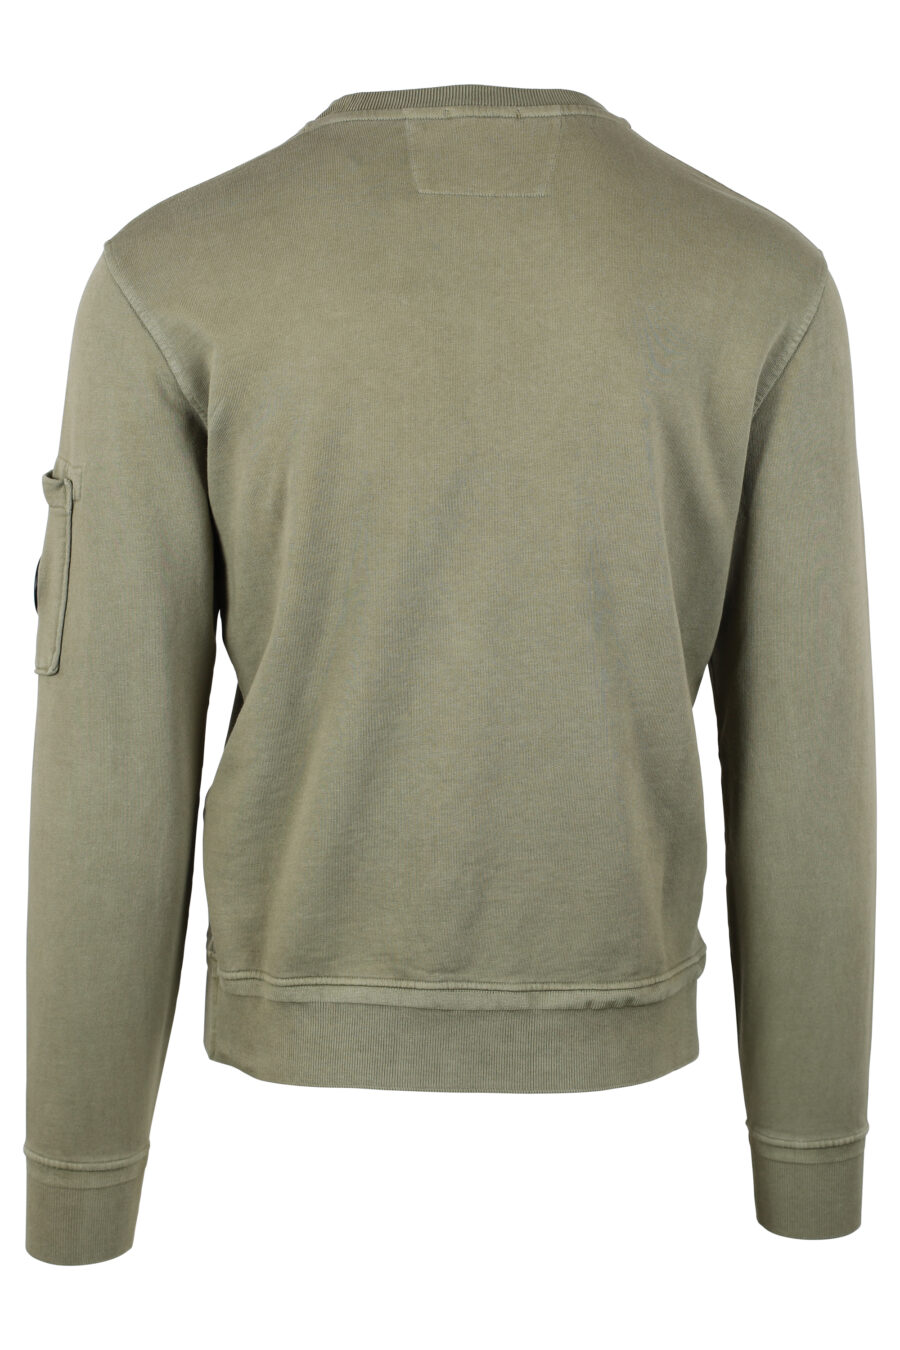 Militärgrünes Sweatshirt mit Fleece-Futter und rundem Mini-Logo - IMG 4668